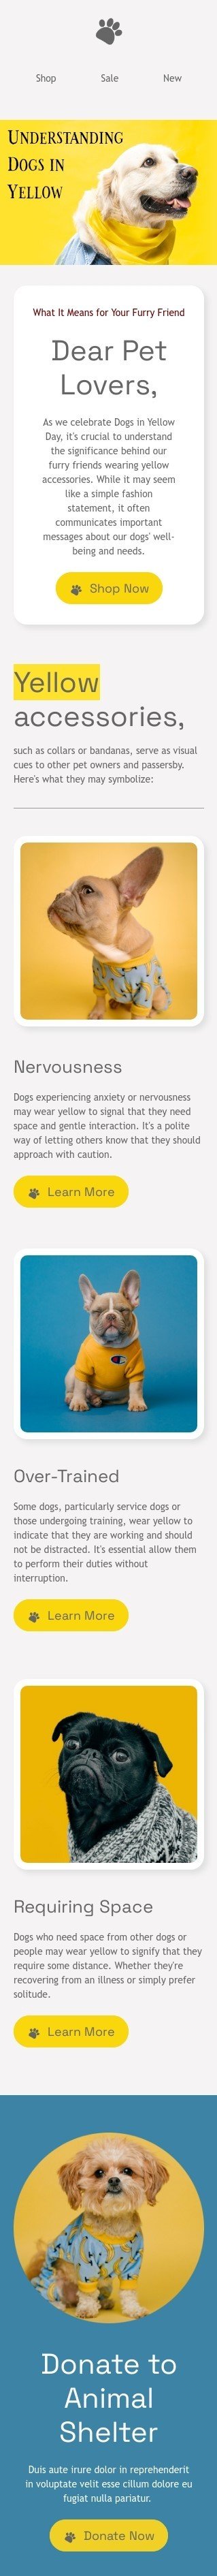 Modelo de e-mail de «Compreendendo os cães em amarelo» de Dia dos cães de amarelo para a indústria de animais de estimação Visualização de dispositivo móvel